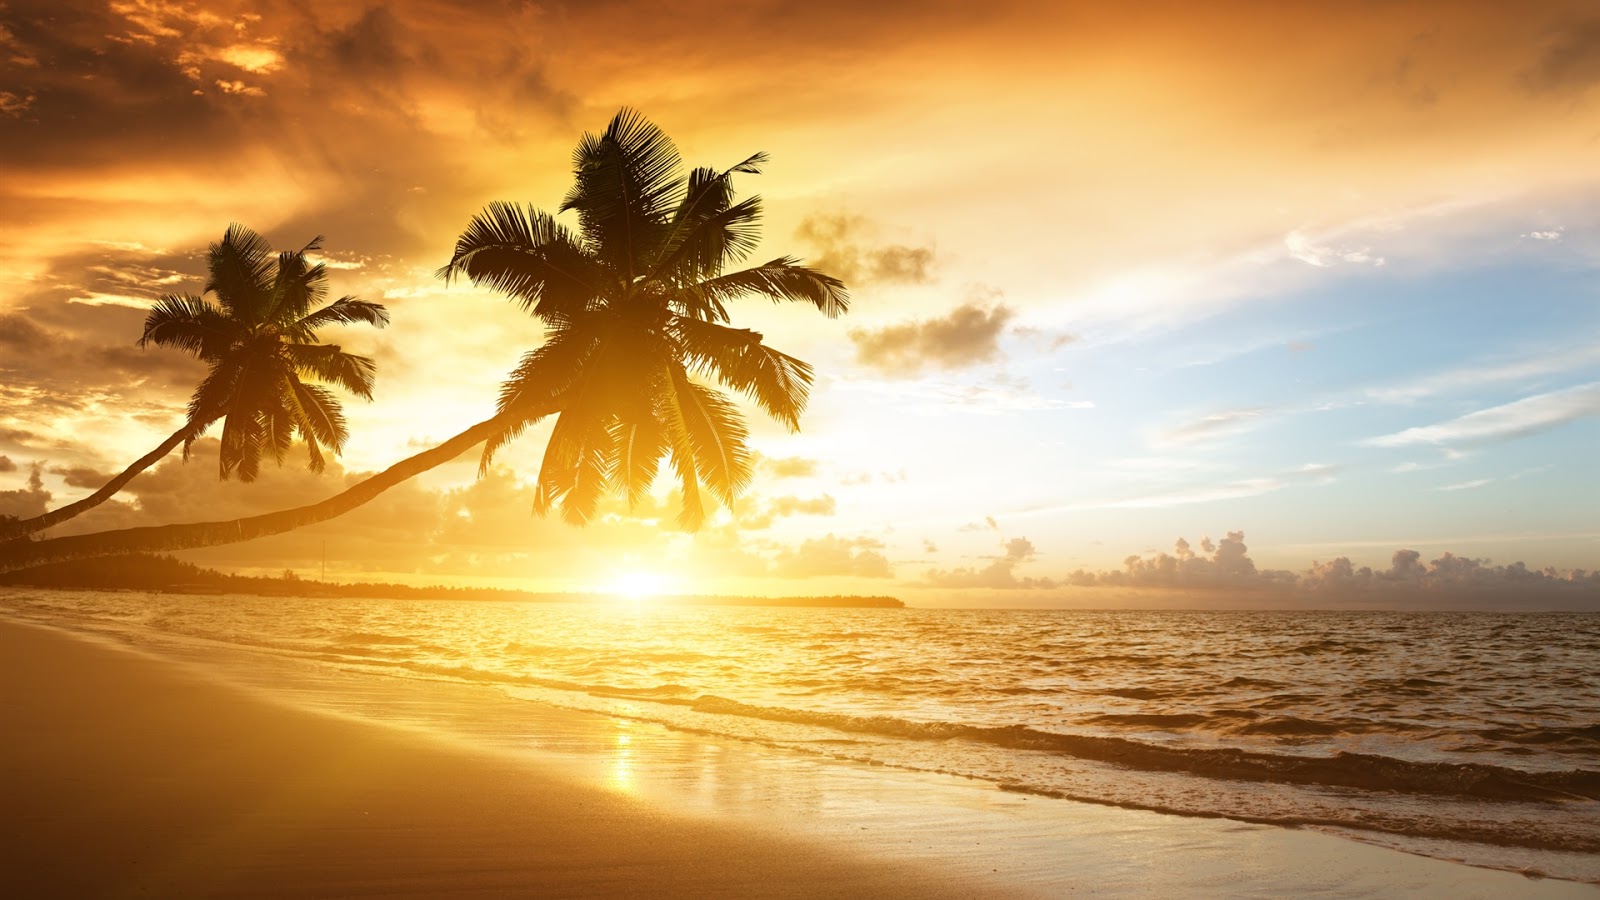 Caribbean Coast Scenery Full HD Desktop Wallpaper 1080p